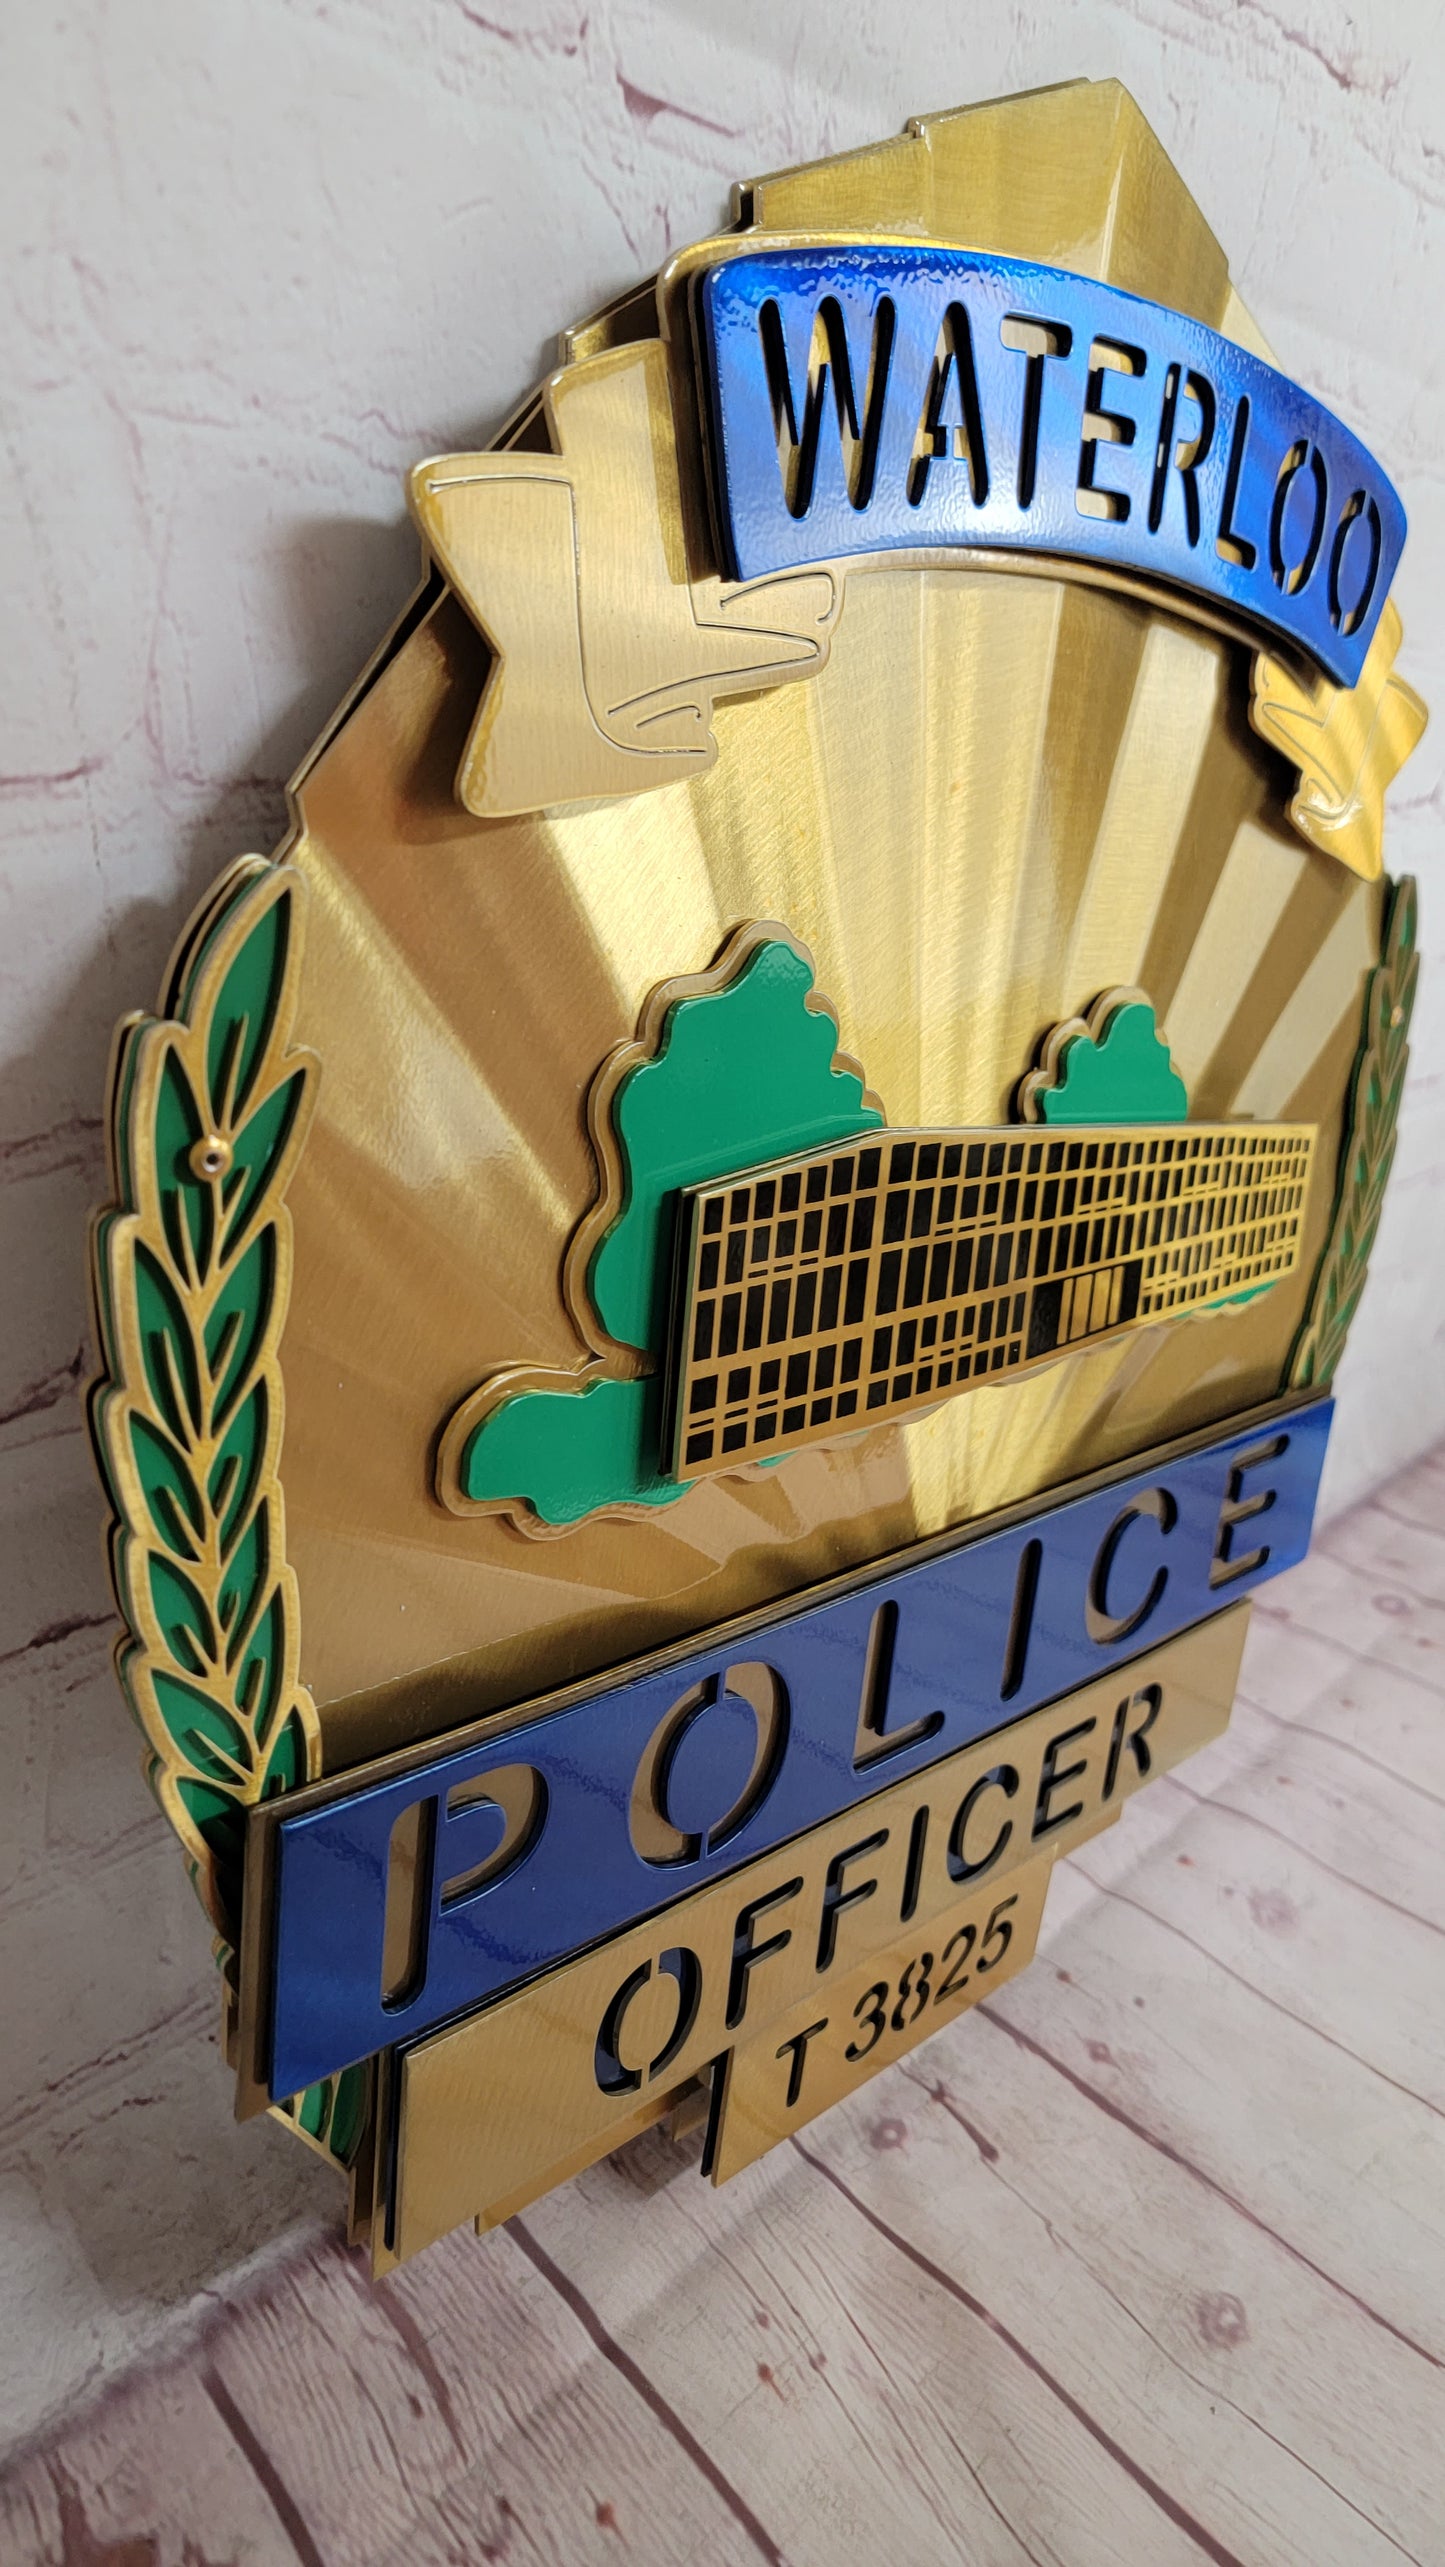 Waterloo Police Officer Badge